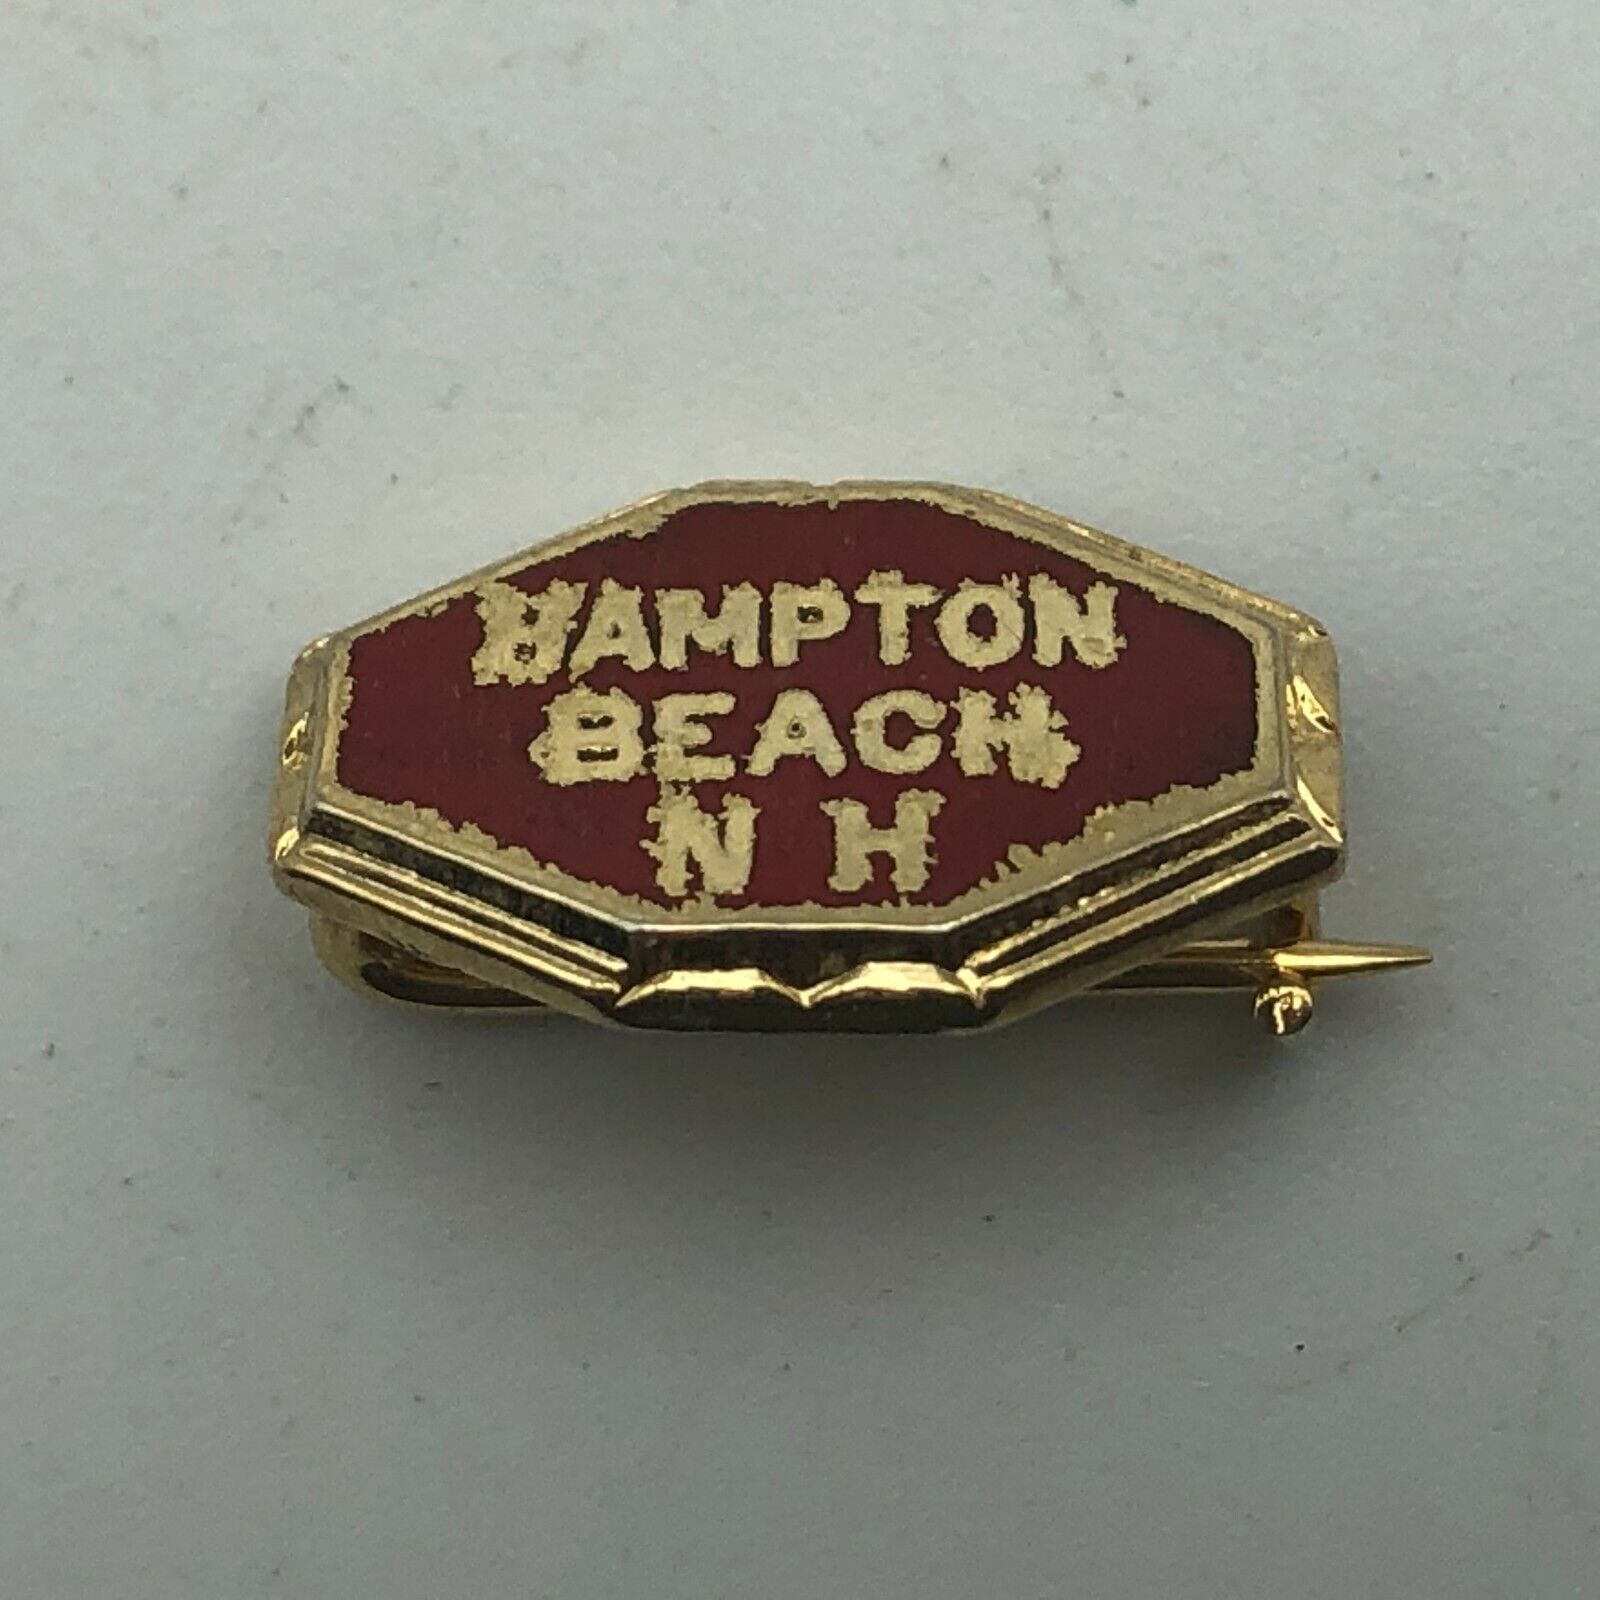 Hampton Beach NH Lapel Pin Brass Tone Red Enamel Vintage Small Travel Souvenir